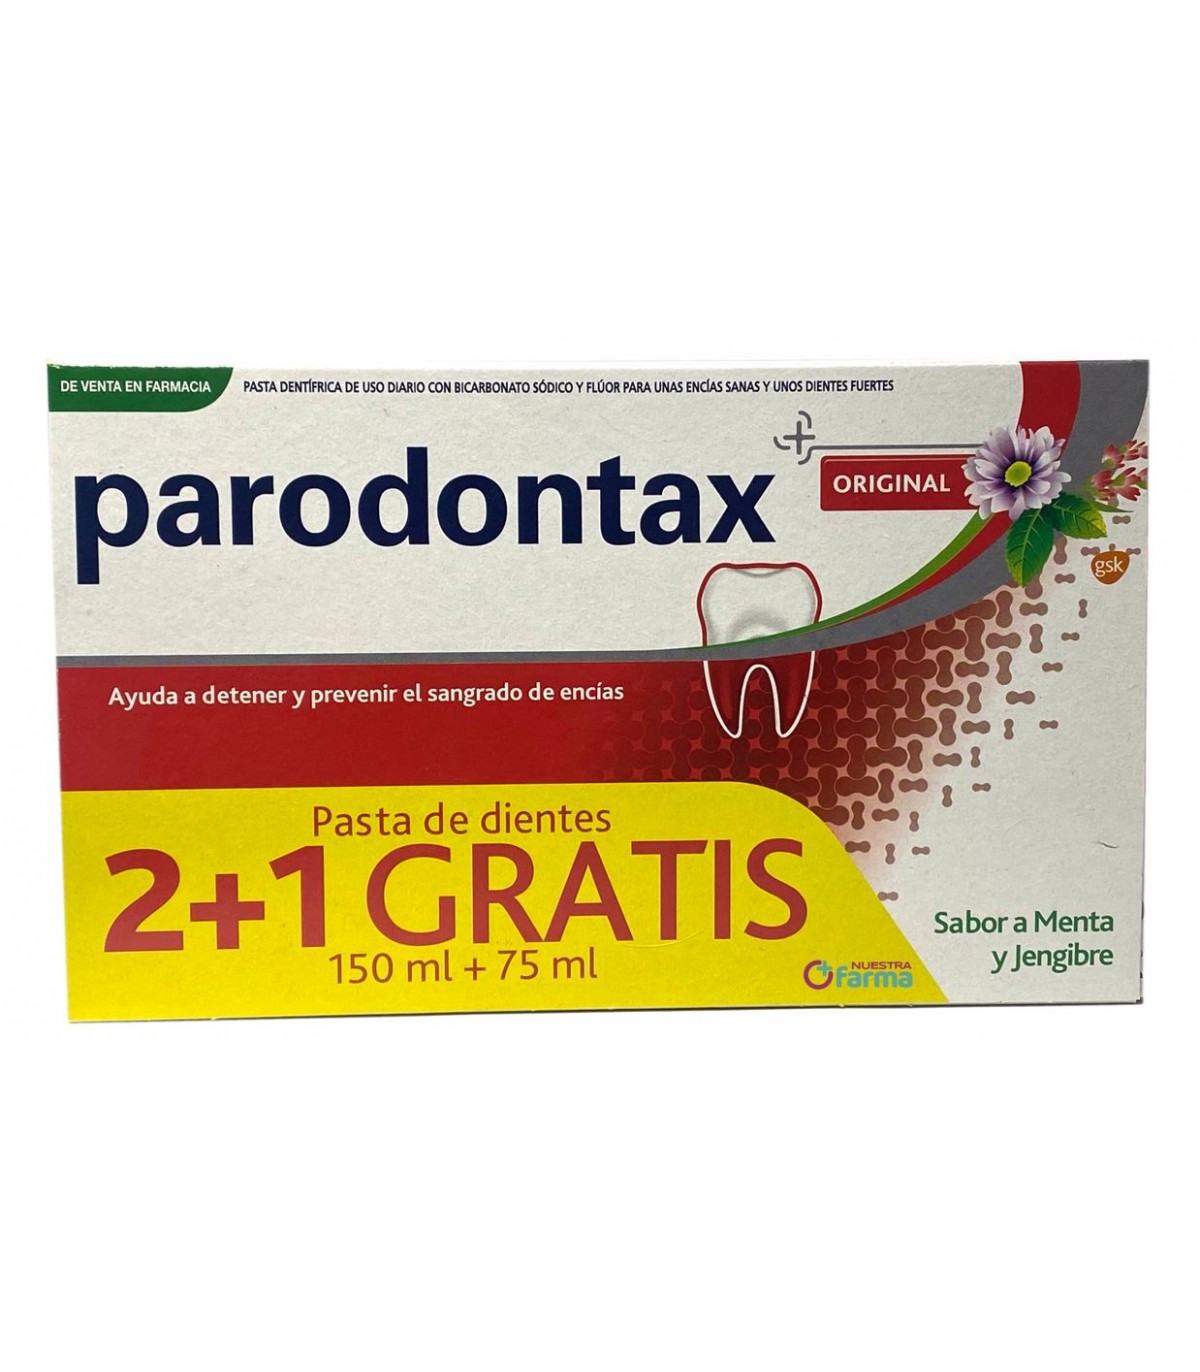 parodontax-original-sabor-menta-y-jengibre-21-gratis-75-ml